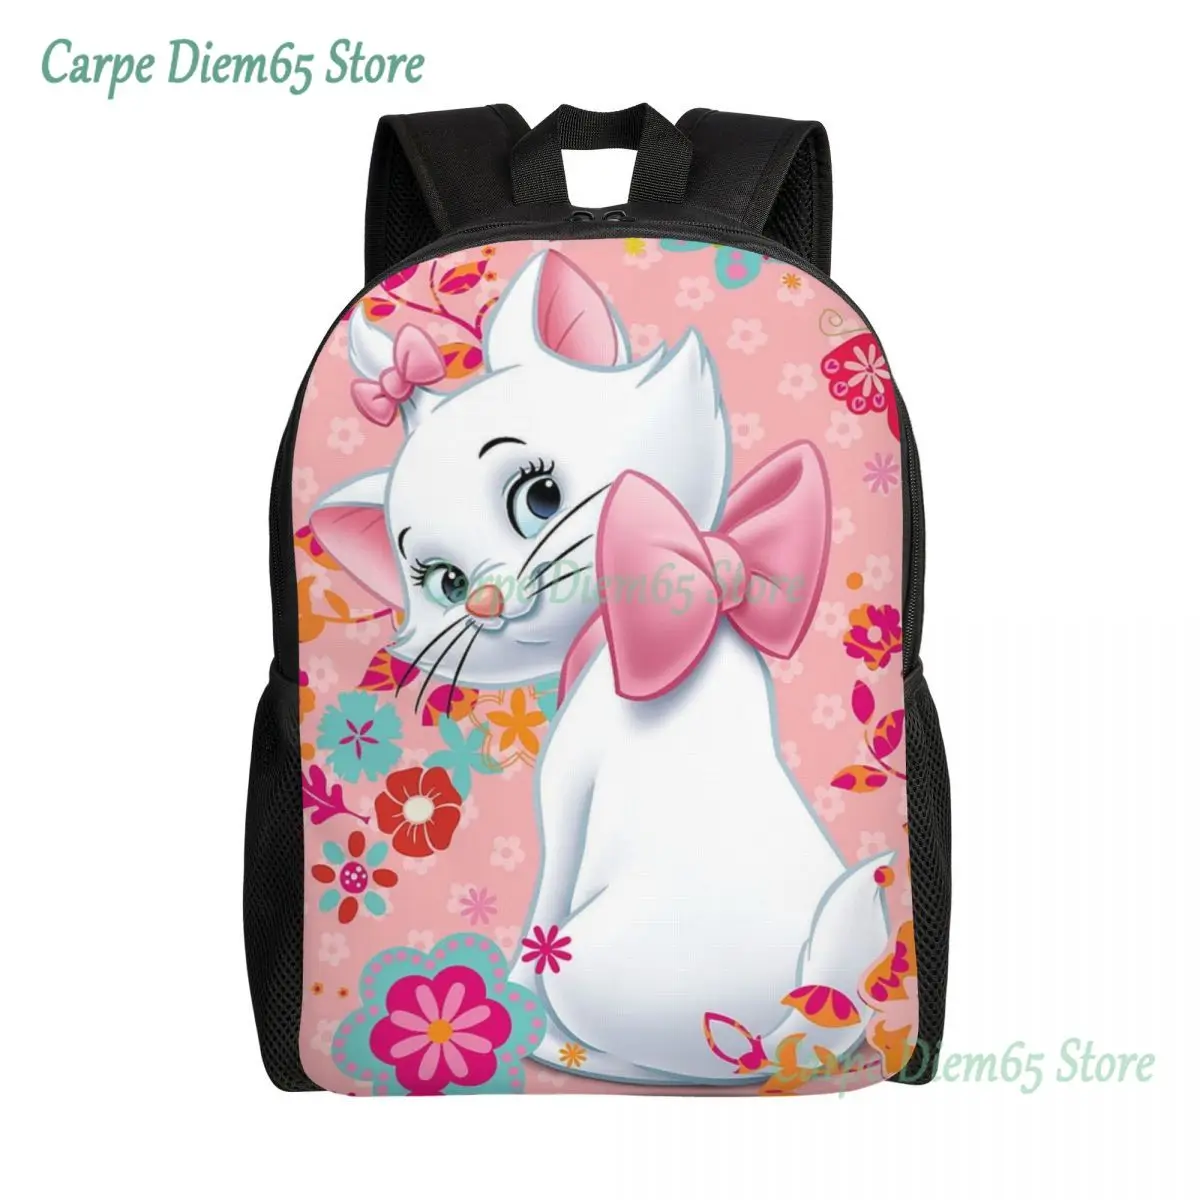 

Marie Cat Backpack for Men Women College School Student Bookbag Fits 15 Inch Laptop Girly Kitten Film Bags